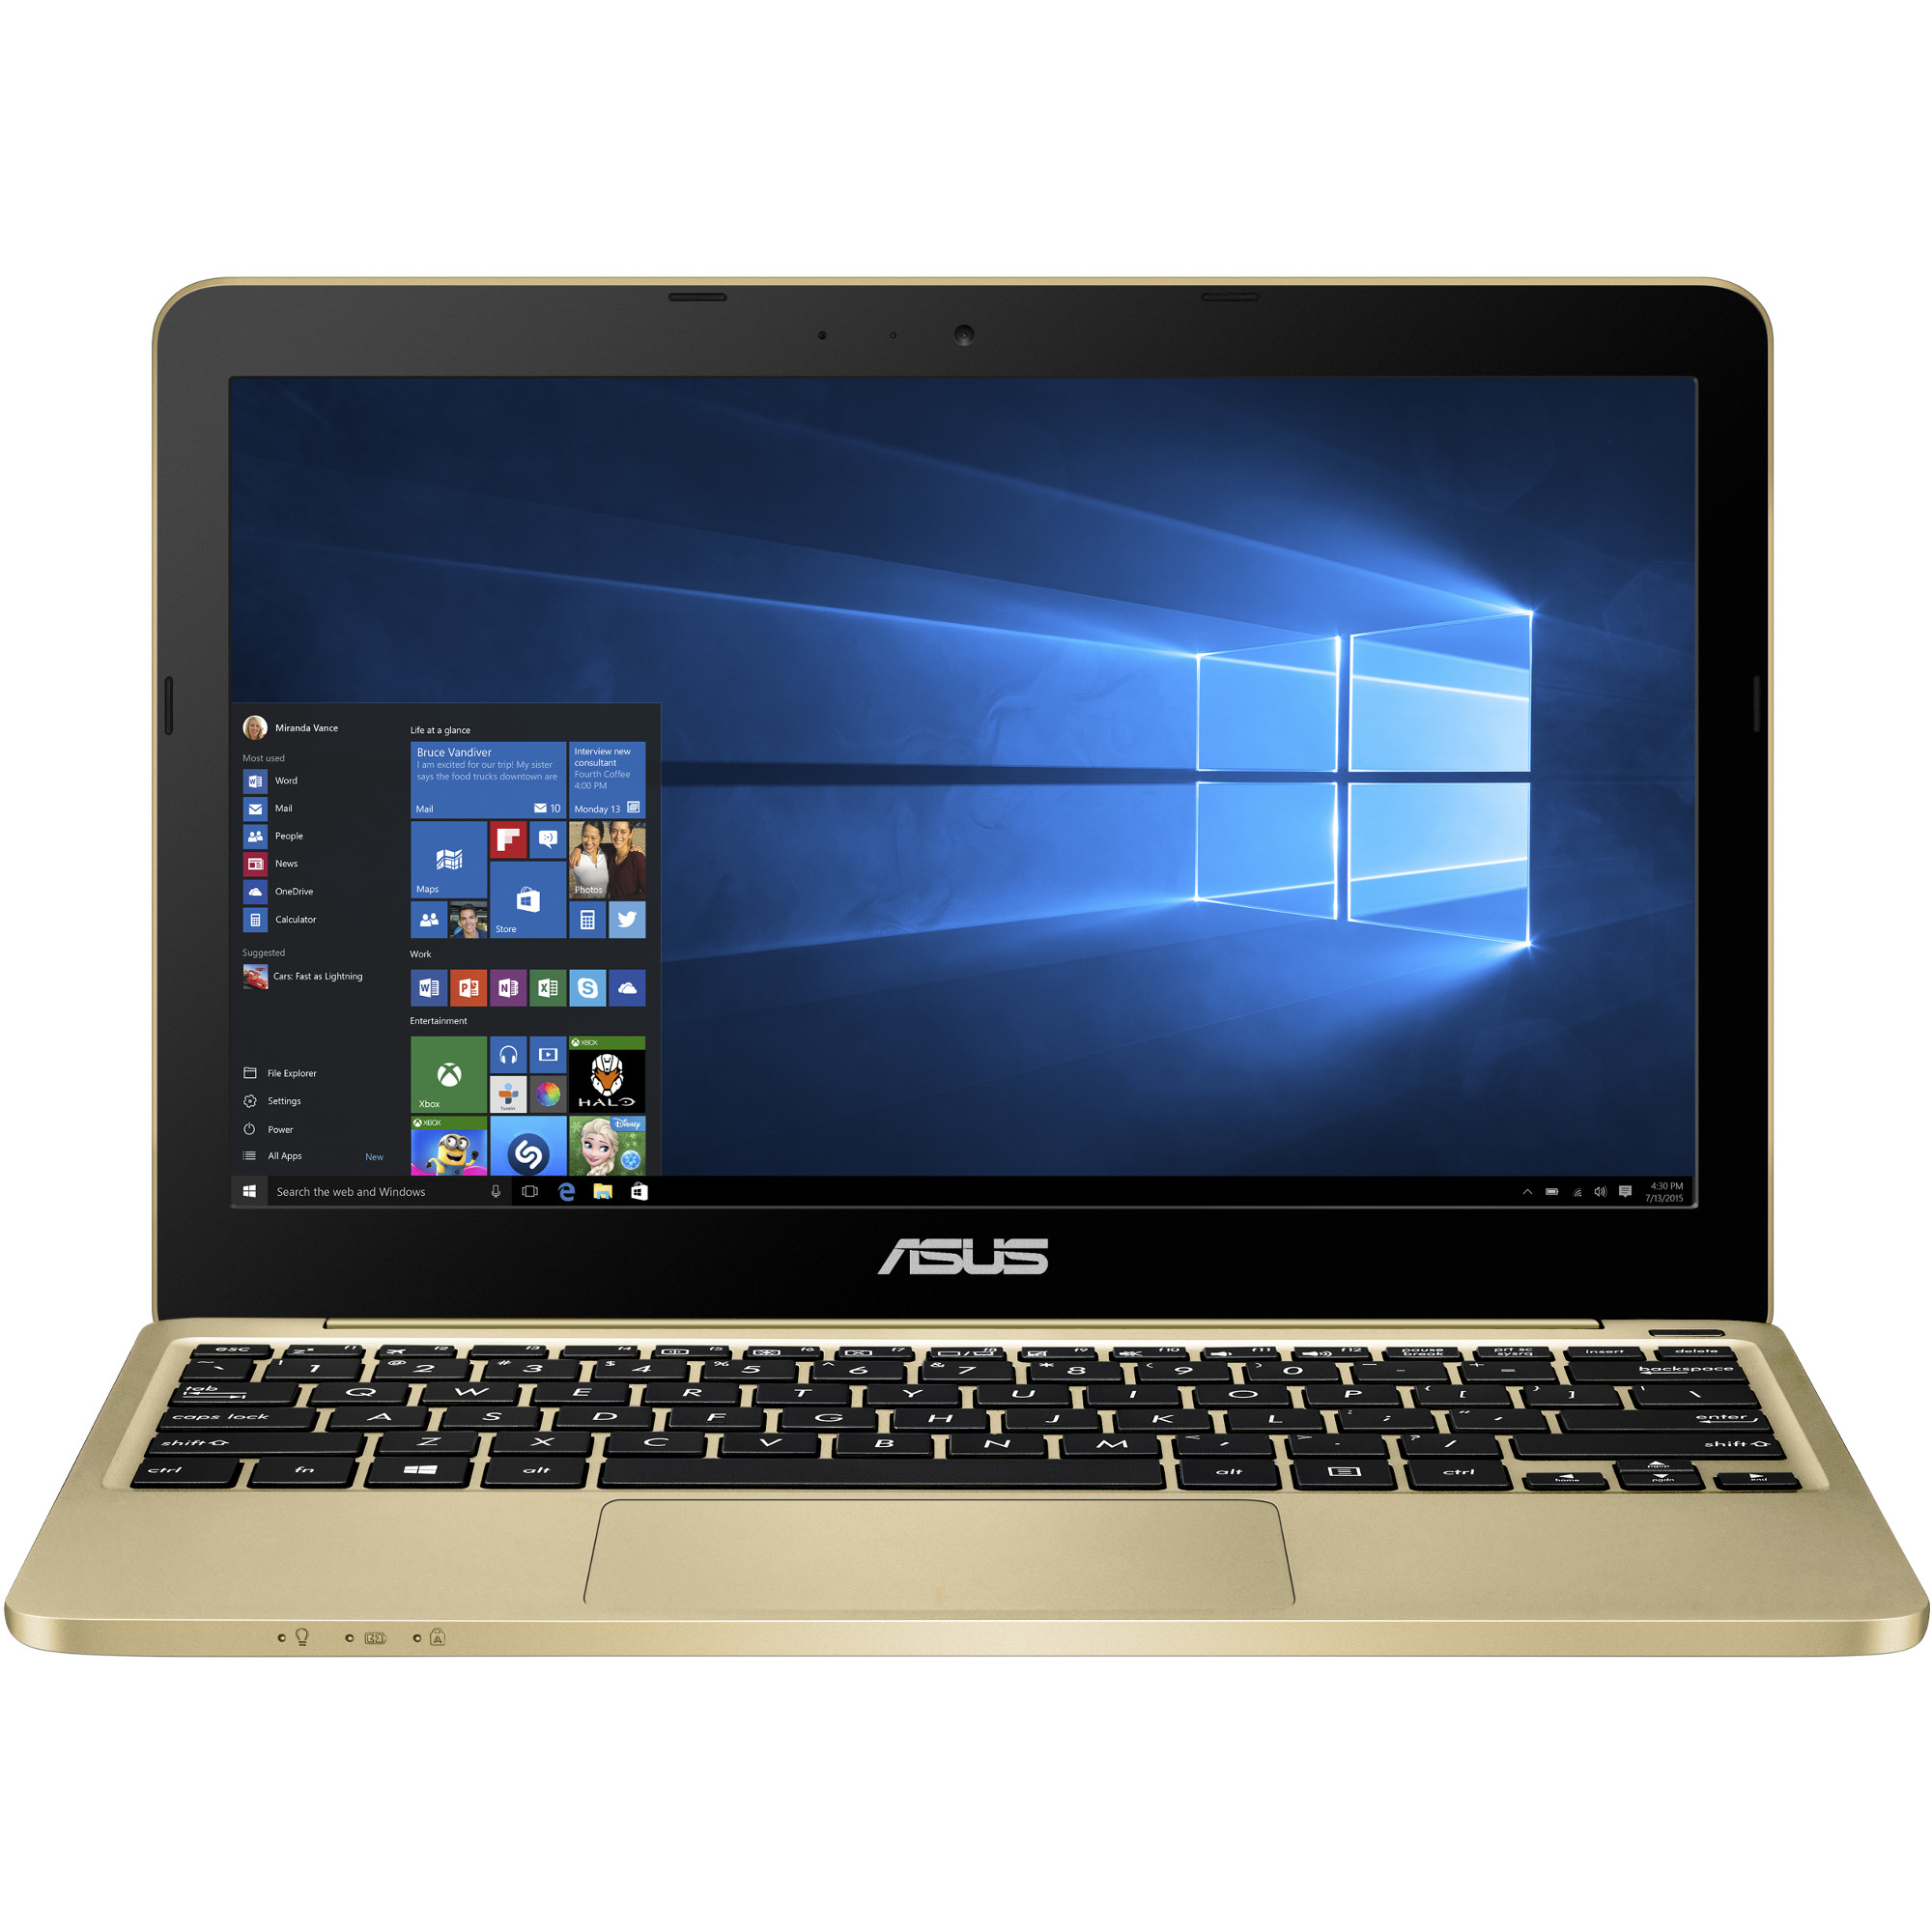  Laptop Asus X205TA, Intel Atom Z3735F, DDR3 2GB, eMMC 32GB + SD 32GB, Intel HD Graphics, Windows 10 